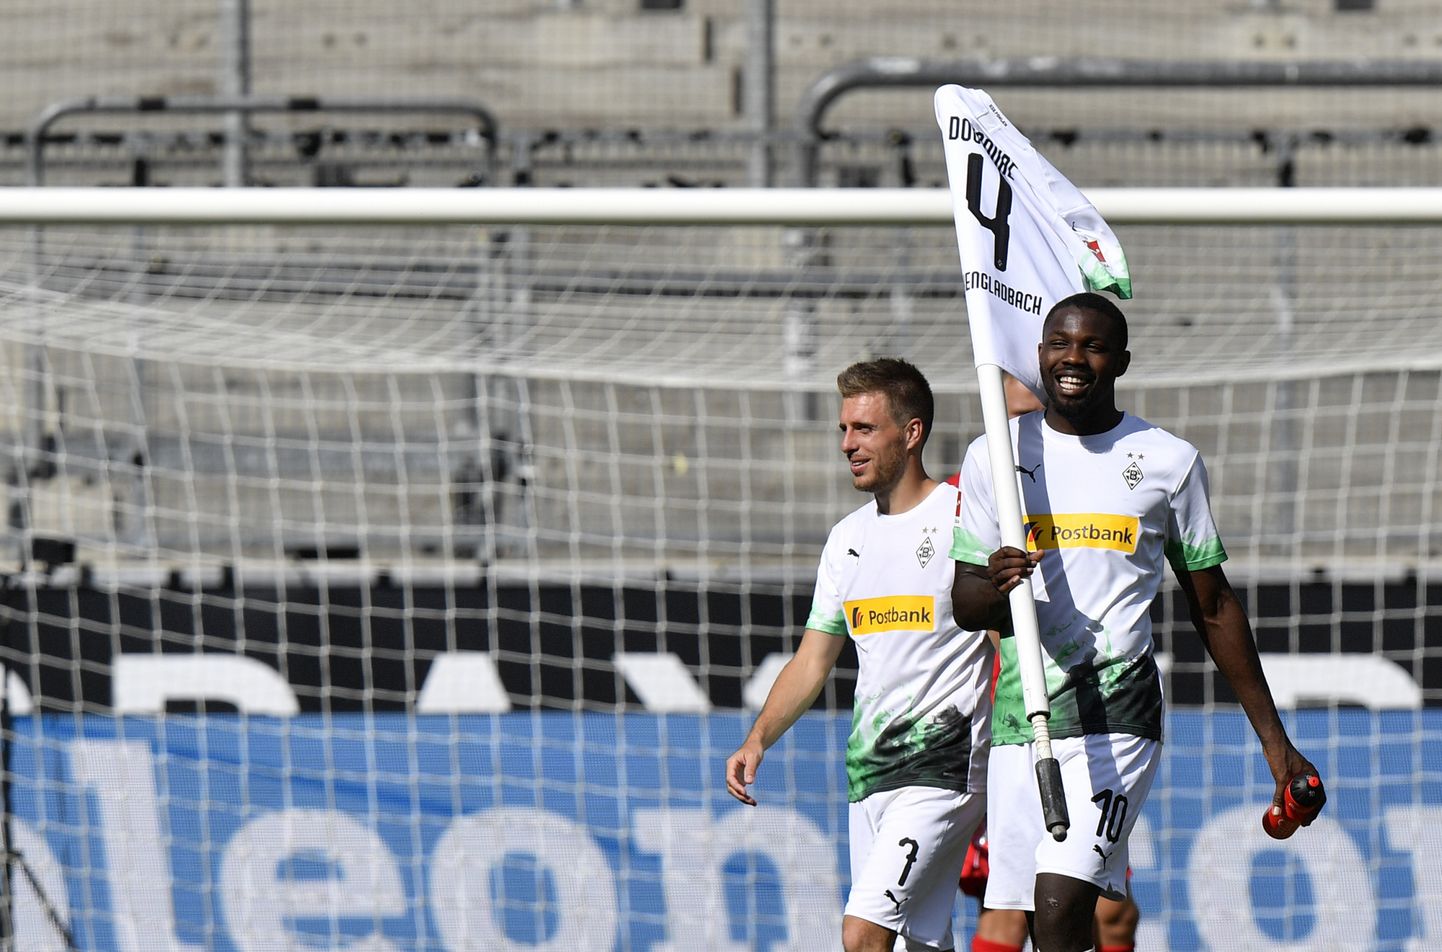 Menhengladbahas "Borussia" futbolisti priecājas par vārtu guvumu.